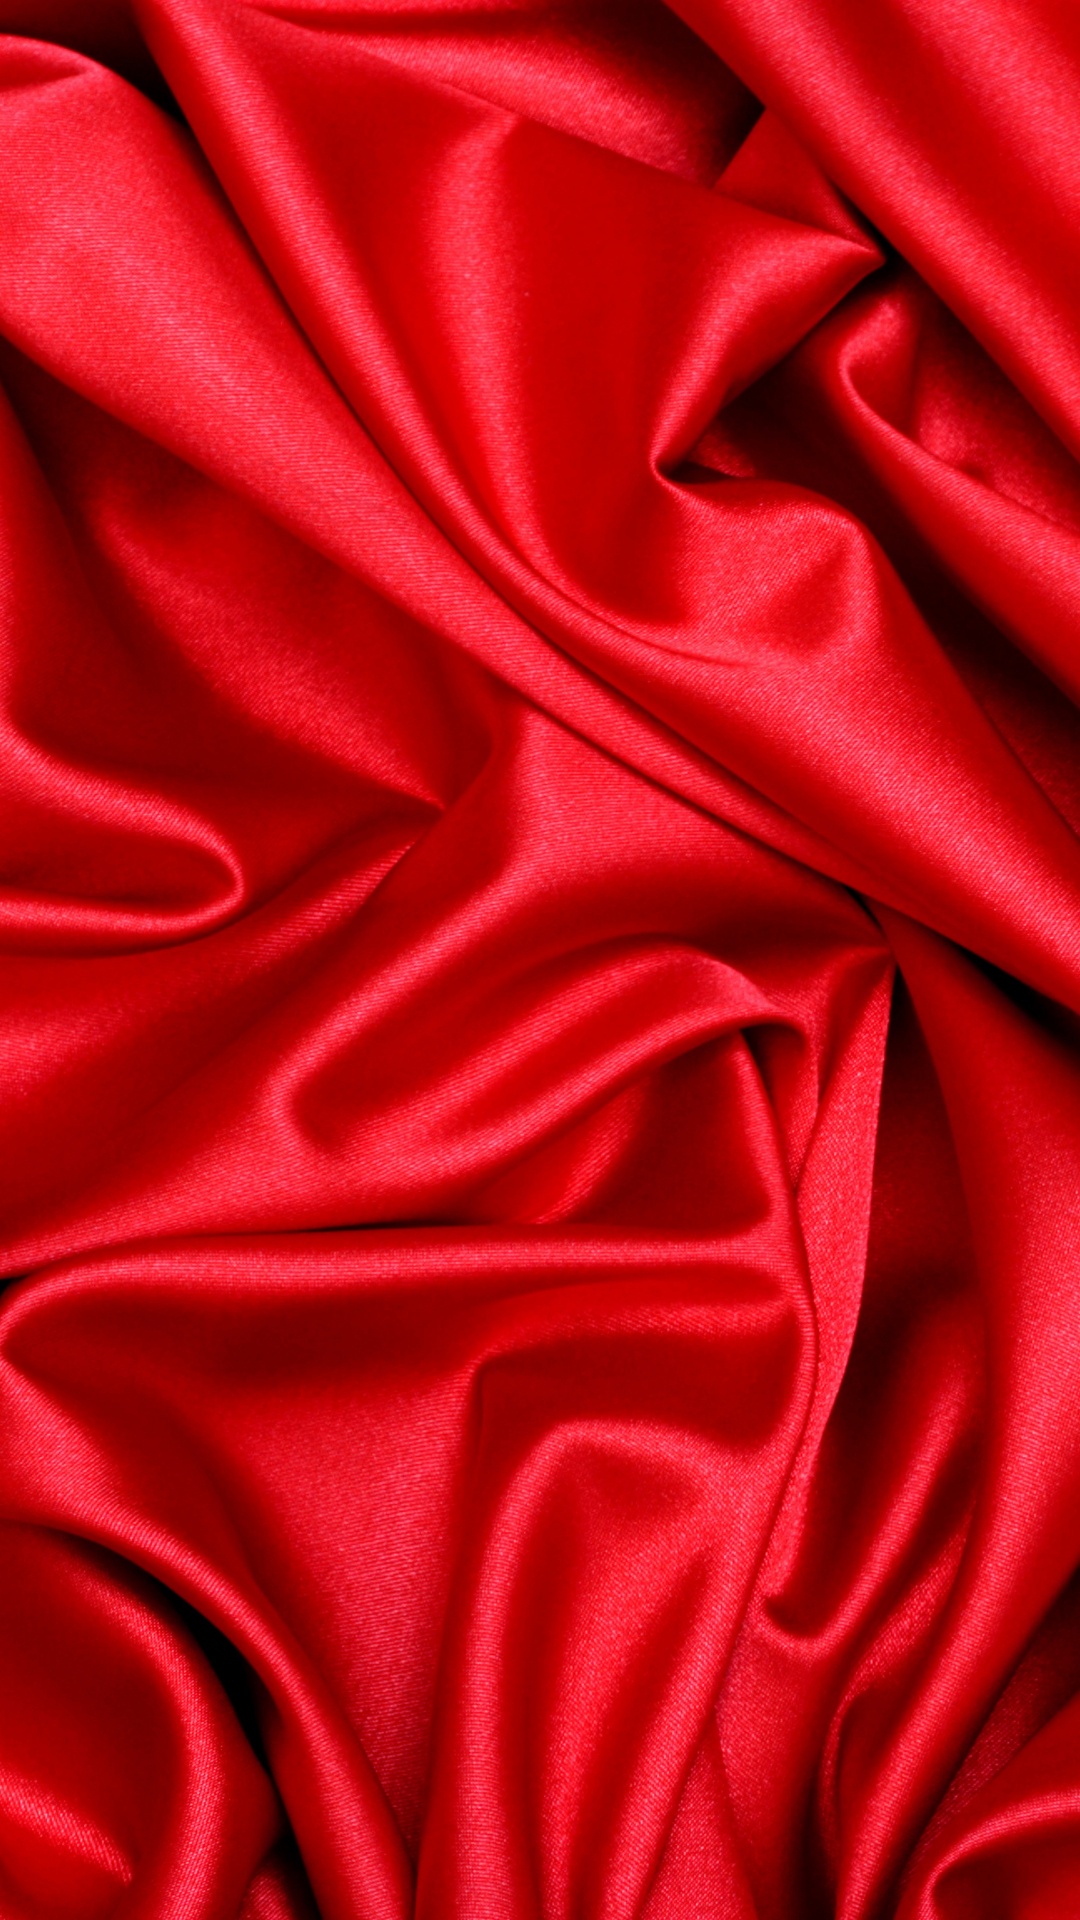 缎面, 丝绸, 红色的, 天鹅绒, 品红色 壁纸 1080x1920 允许